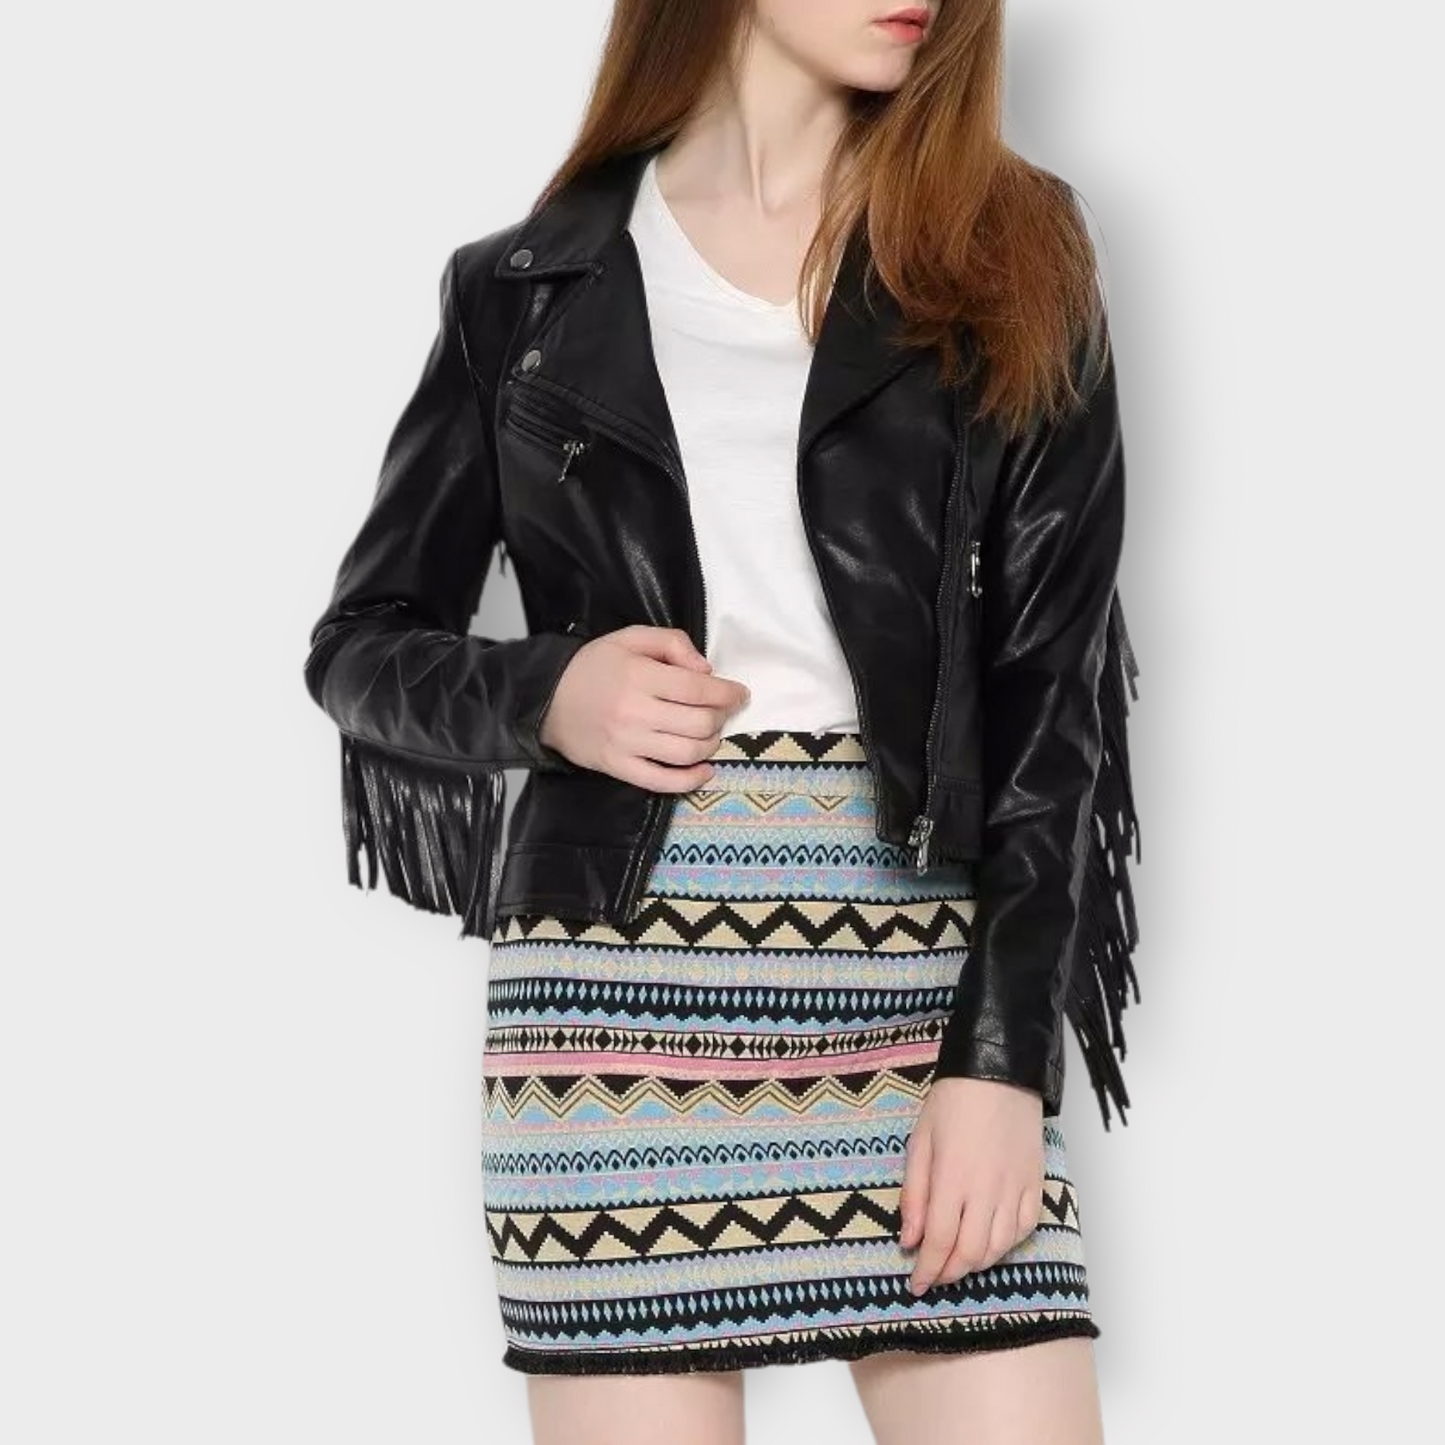 leather fringe style jacket for women